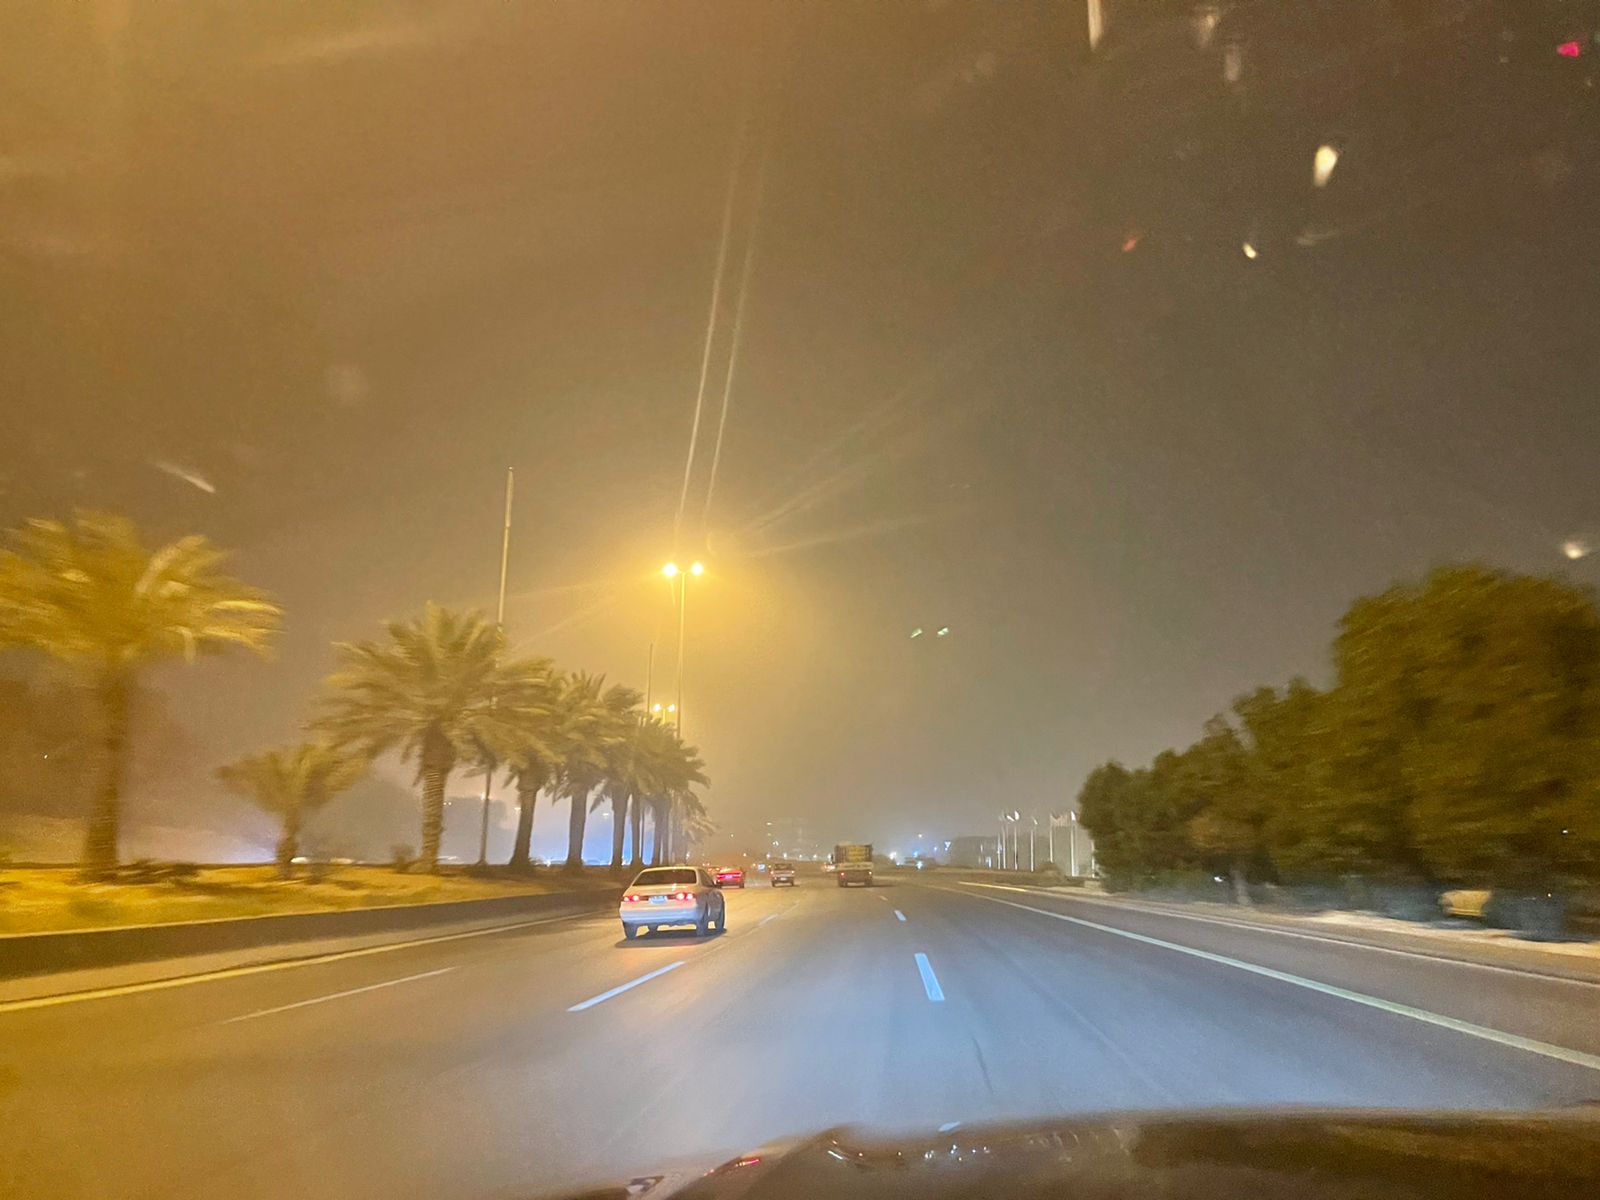 رياح وغبار وشبه انعدام الرؤية في الرياض الآن